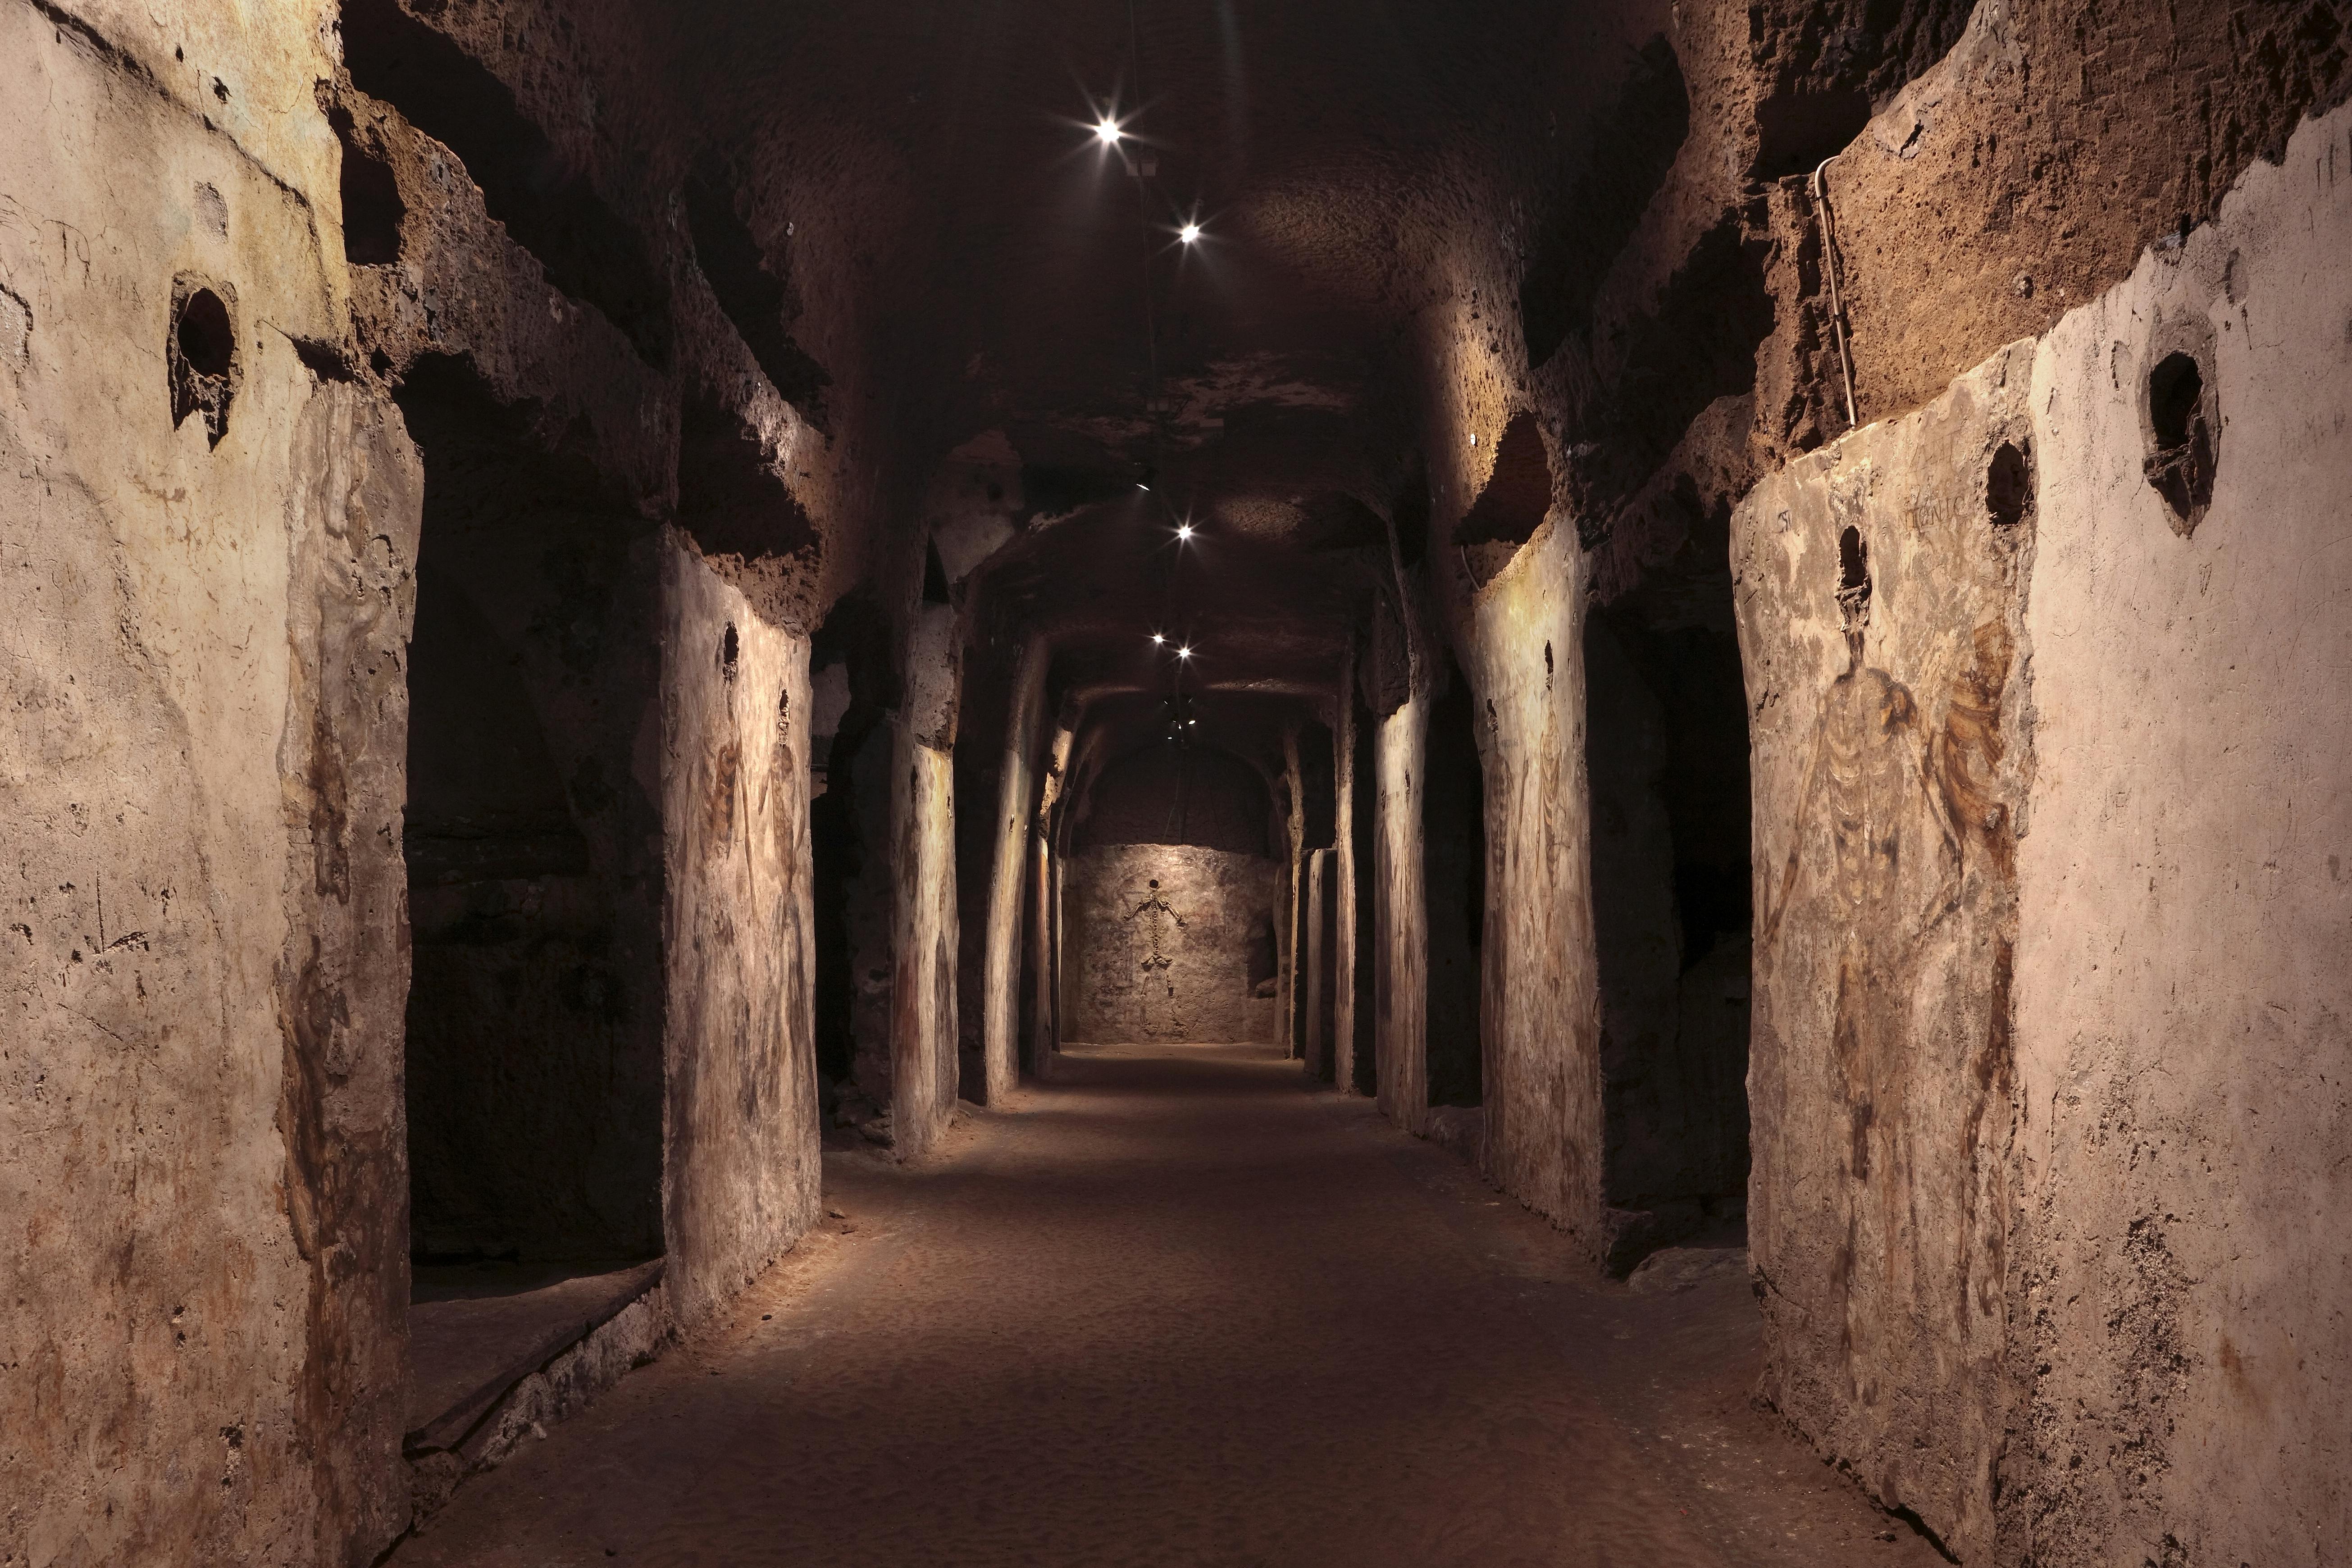 Billetter og guidet omvising i katakombene i San Gaudioso